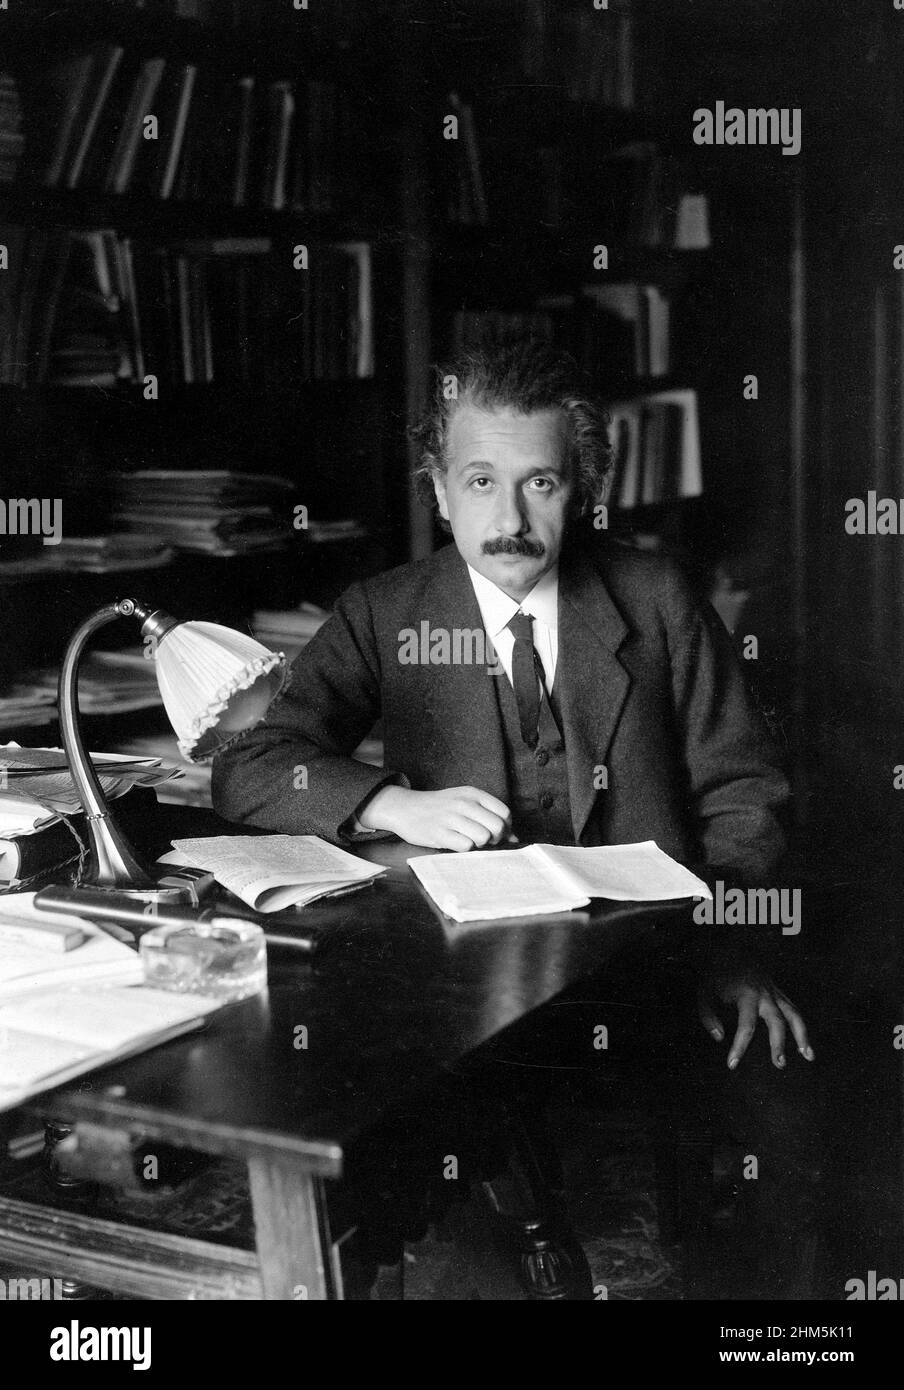 Fotografía de Albert Einstein en su oficina en la Universidad de Berlín, 1920. Fotógrafo desconocido. Foto de stock